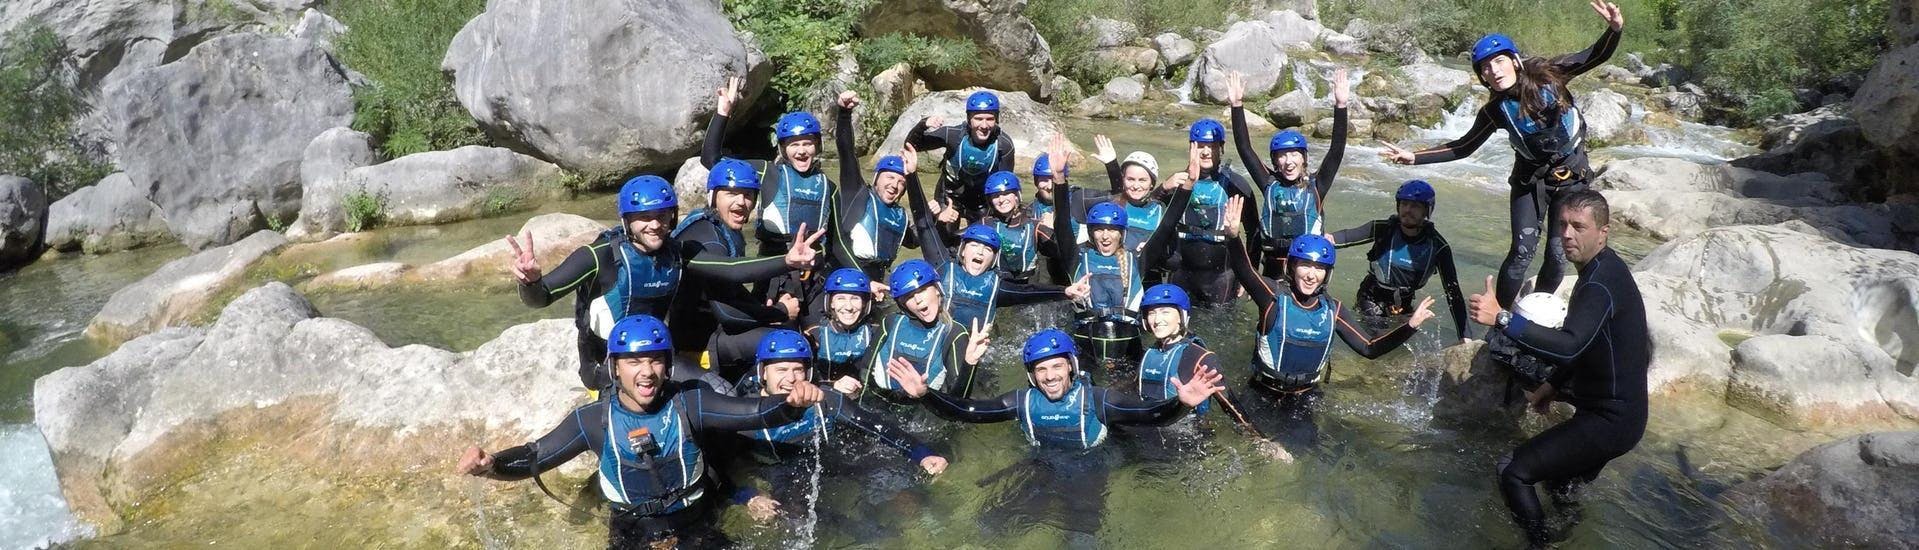 Vrienden zijn Canyoning in de Cetina rivier in de buurt van Omiš - Basis Tour met Dalmare Reisbureau Omiš.